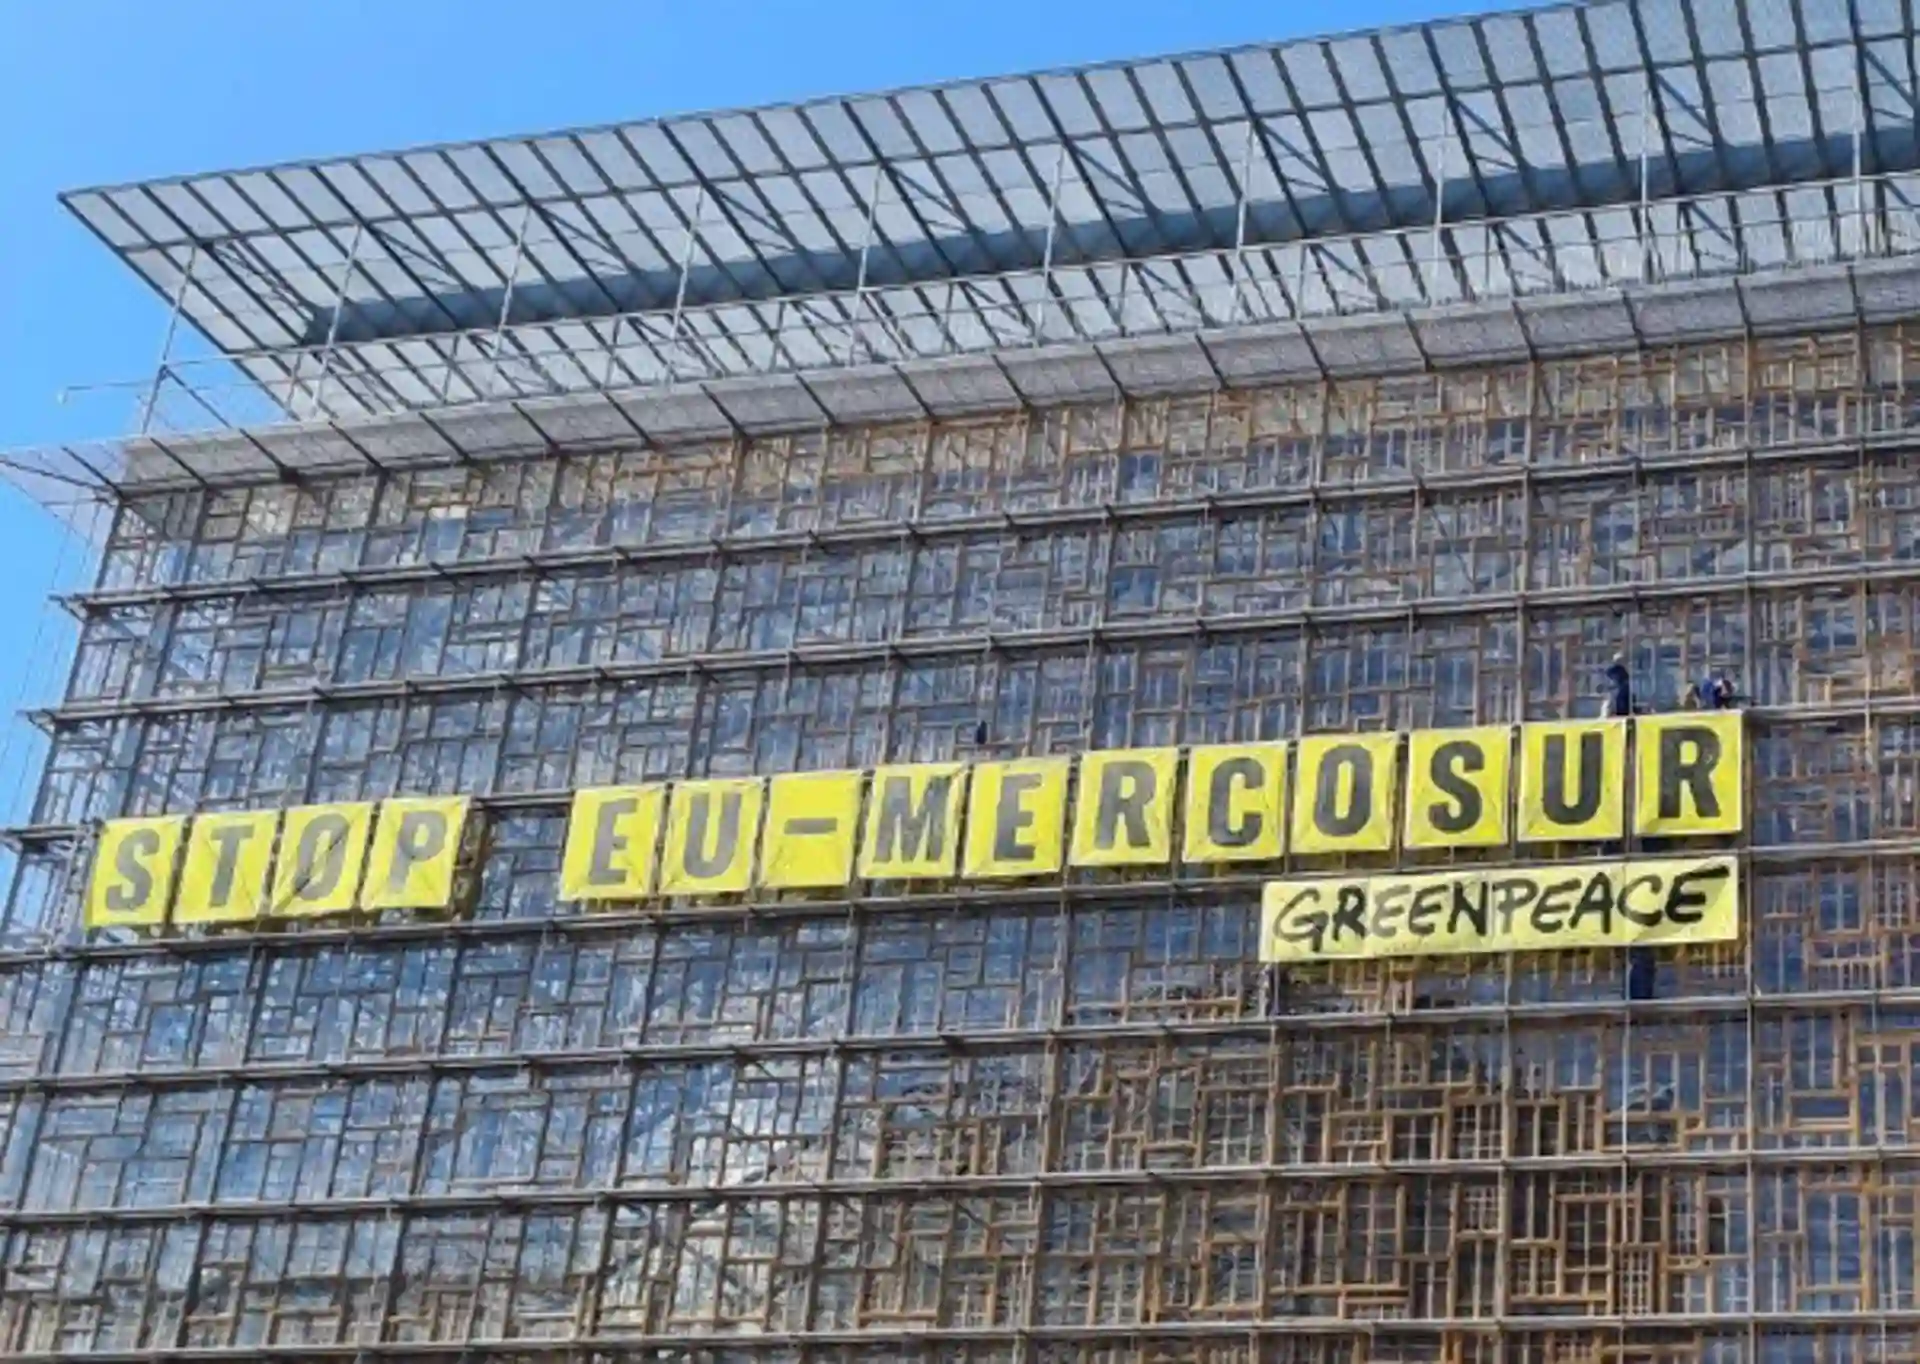 Activistas de Greenpeace Bélgica escalan la sede del Consejo de La Unión Europea en Bruselas y despliegan una pancarta con el mensaje ‘Stop UE Mercosur’